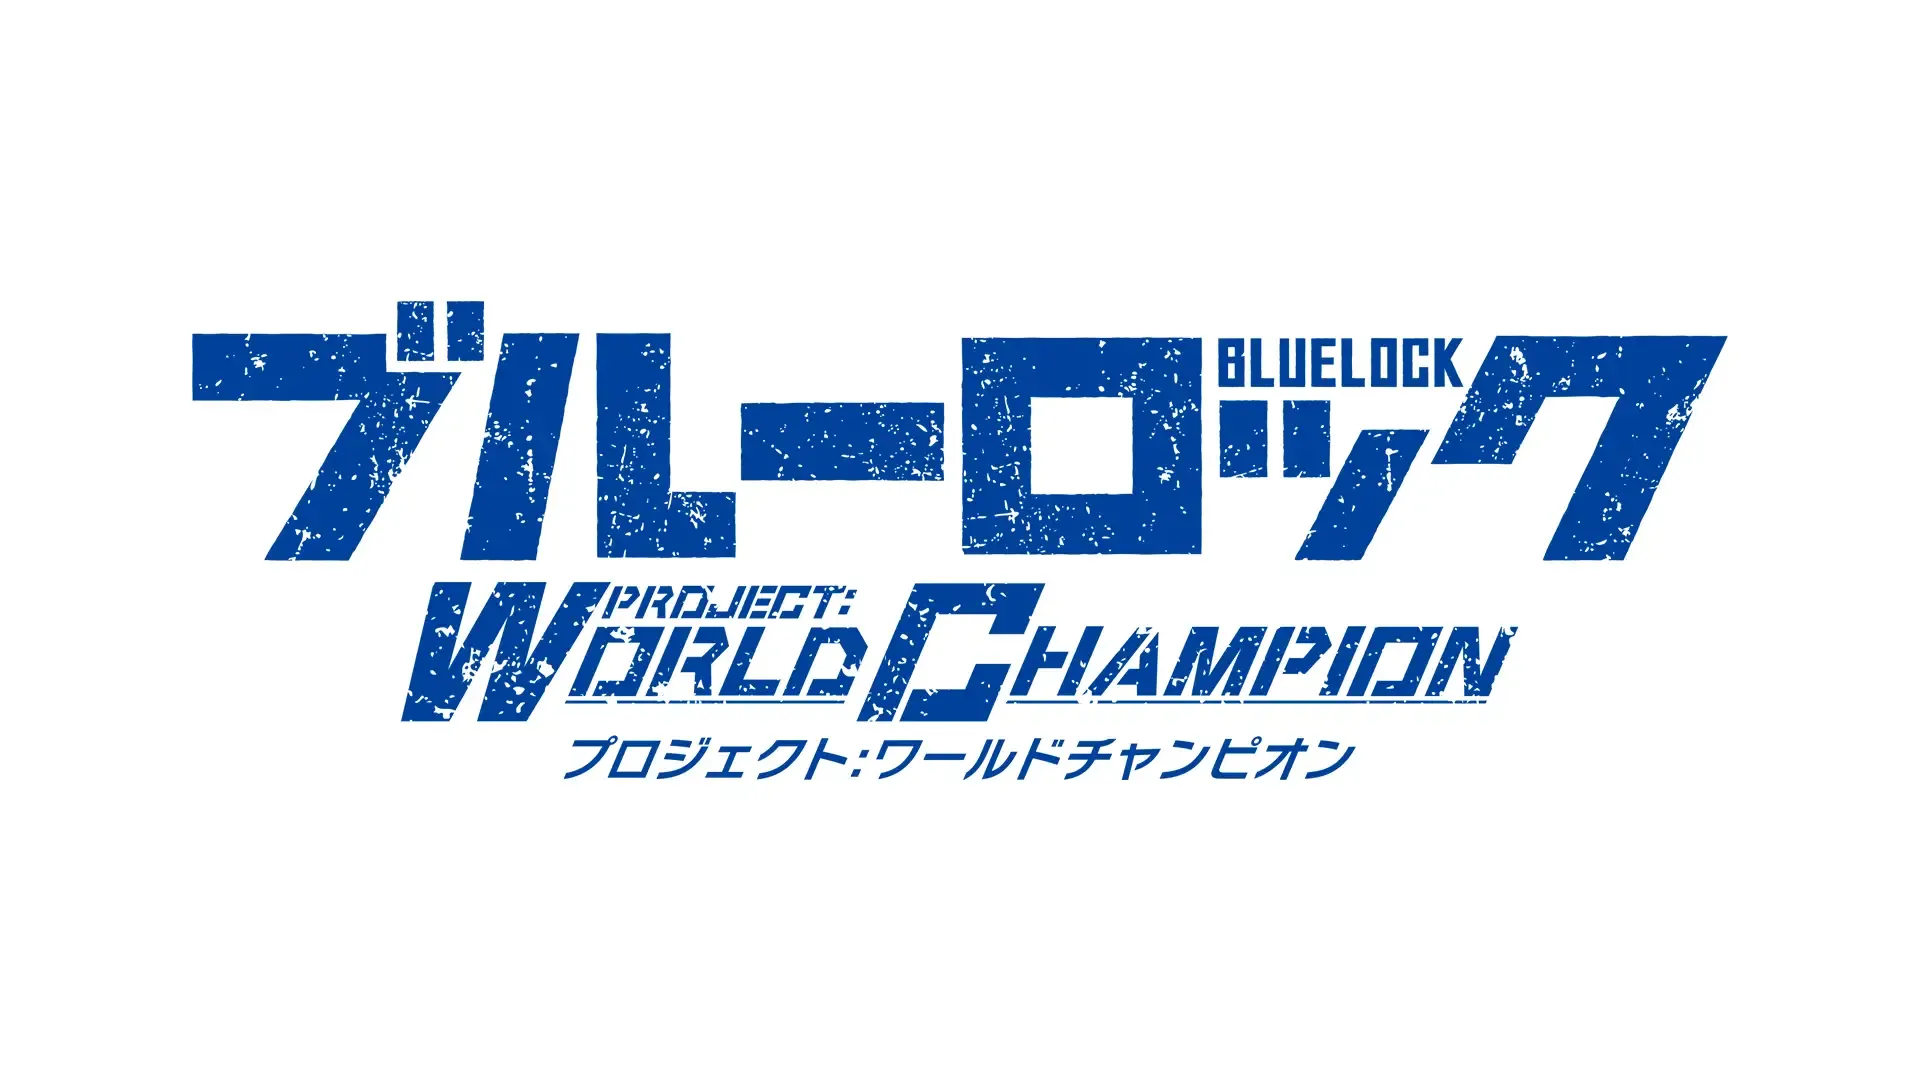 ブルーロック Project: World Champion